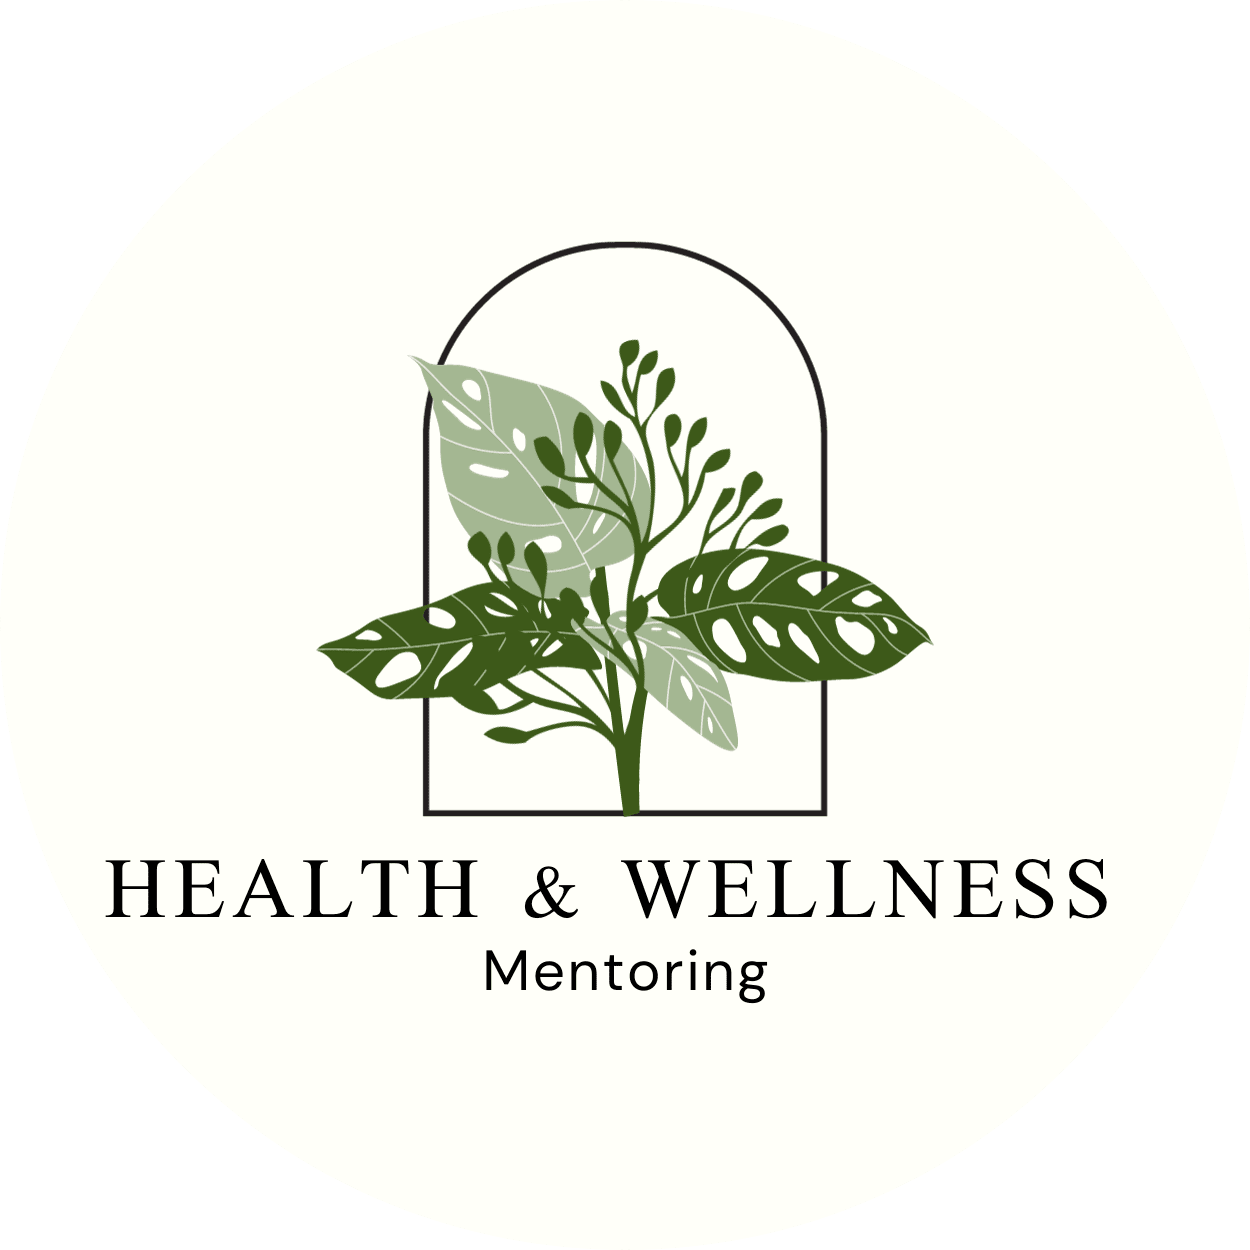 Health & Wellness Mentoring